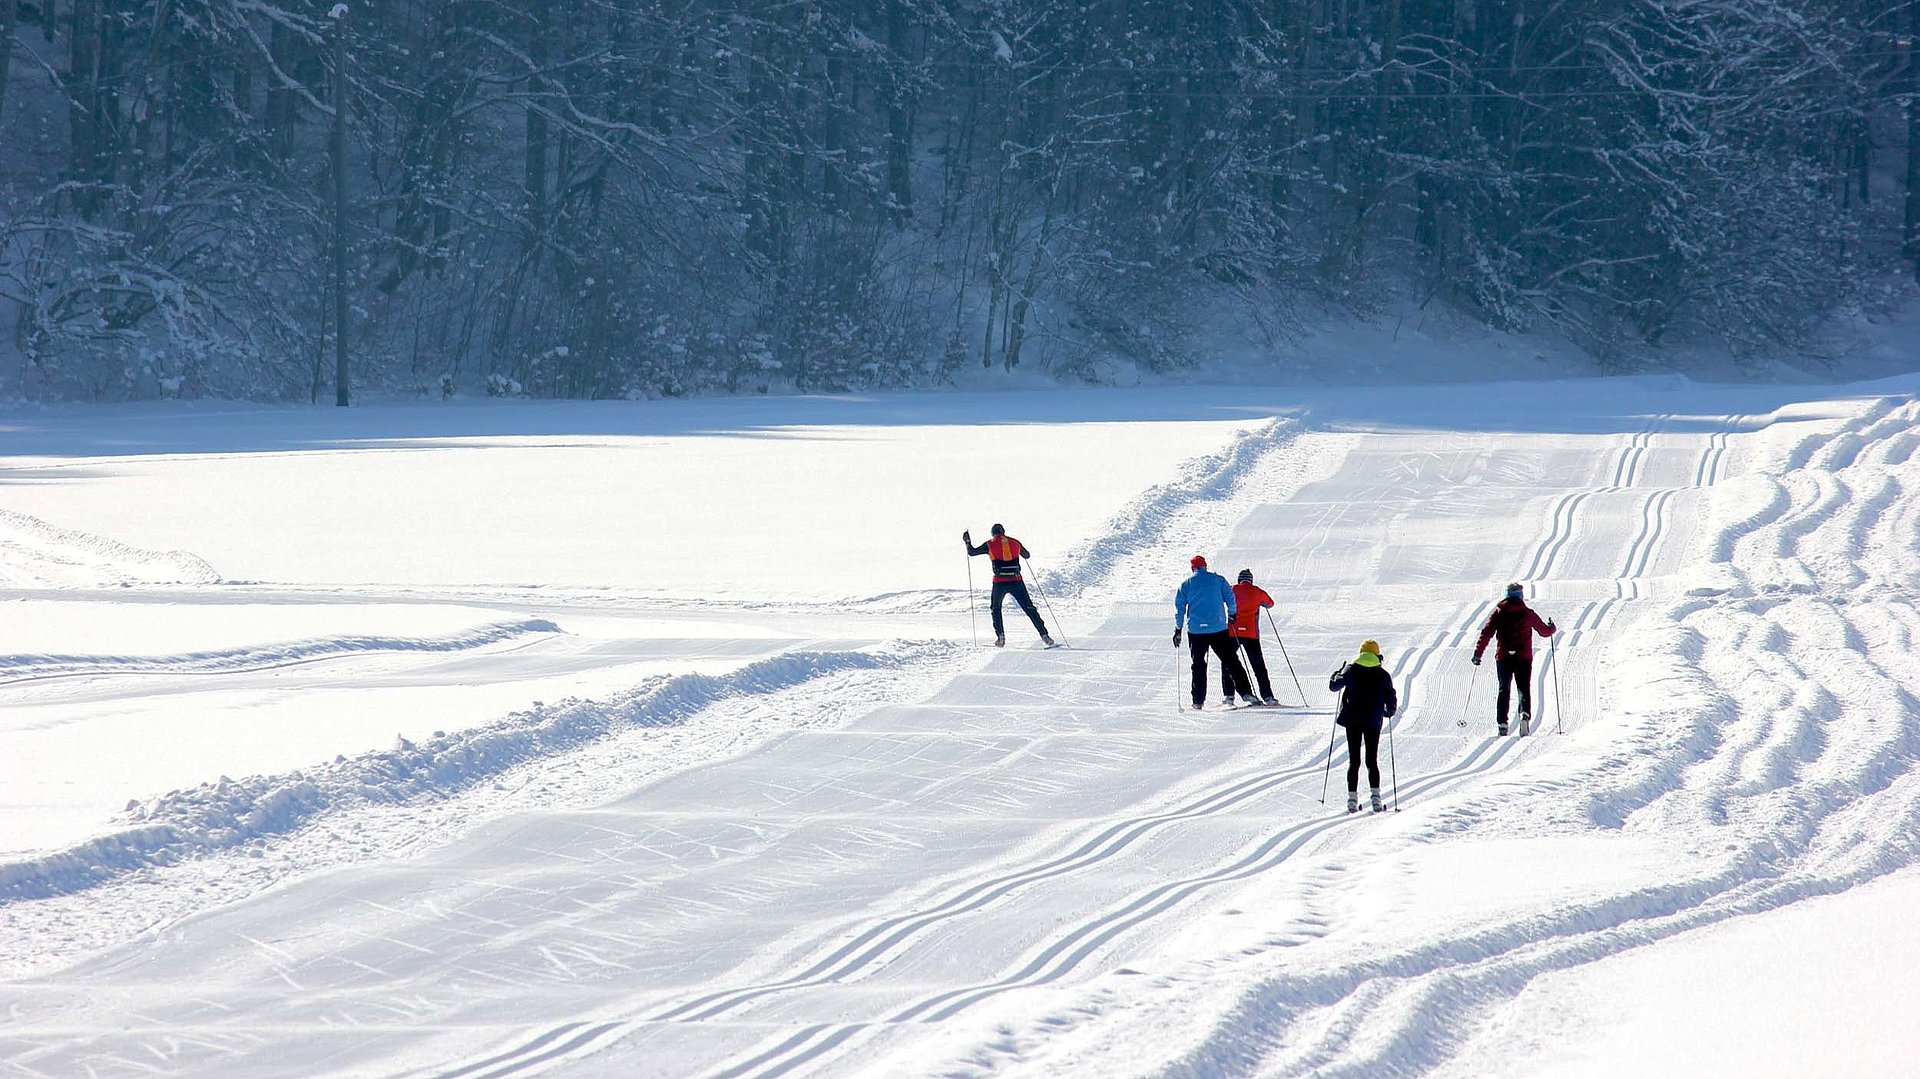 Anreize für Aktivitäten im Fichtelgebirge - Mehrere Leute, auch Gruppen gehen im Ski-Langlauf, entfernen sich von der Kamera weg